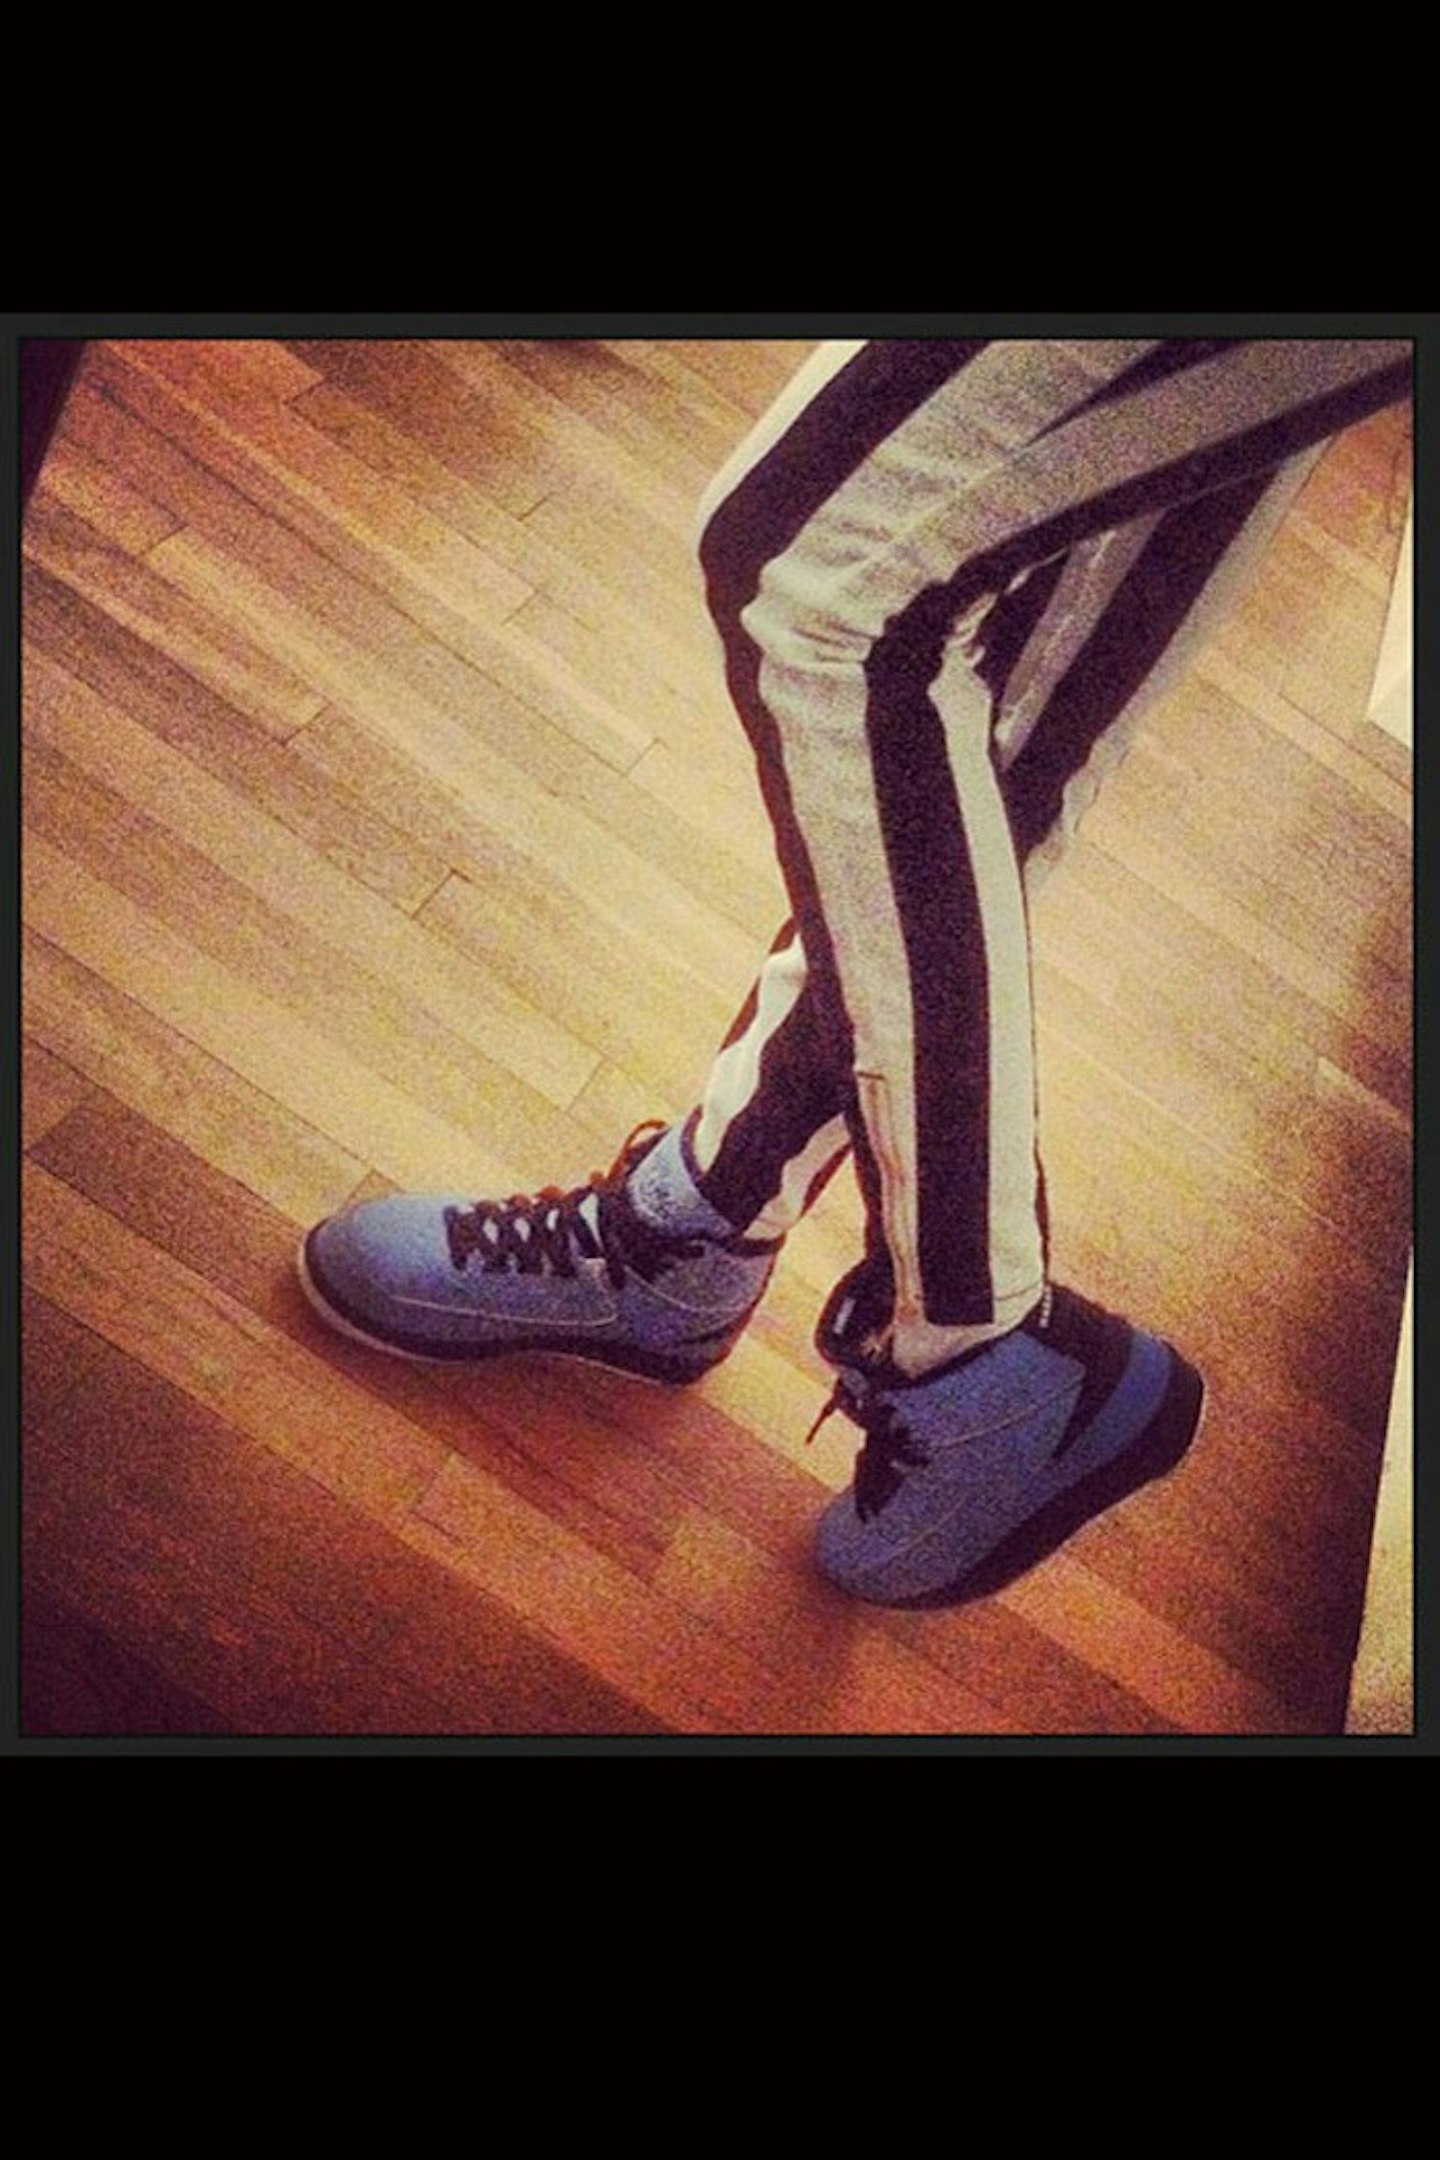 @CaraDelevingne: 'My first pair of Jordans! Thanks wifey @ritaora'